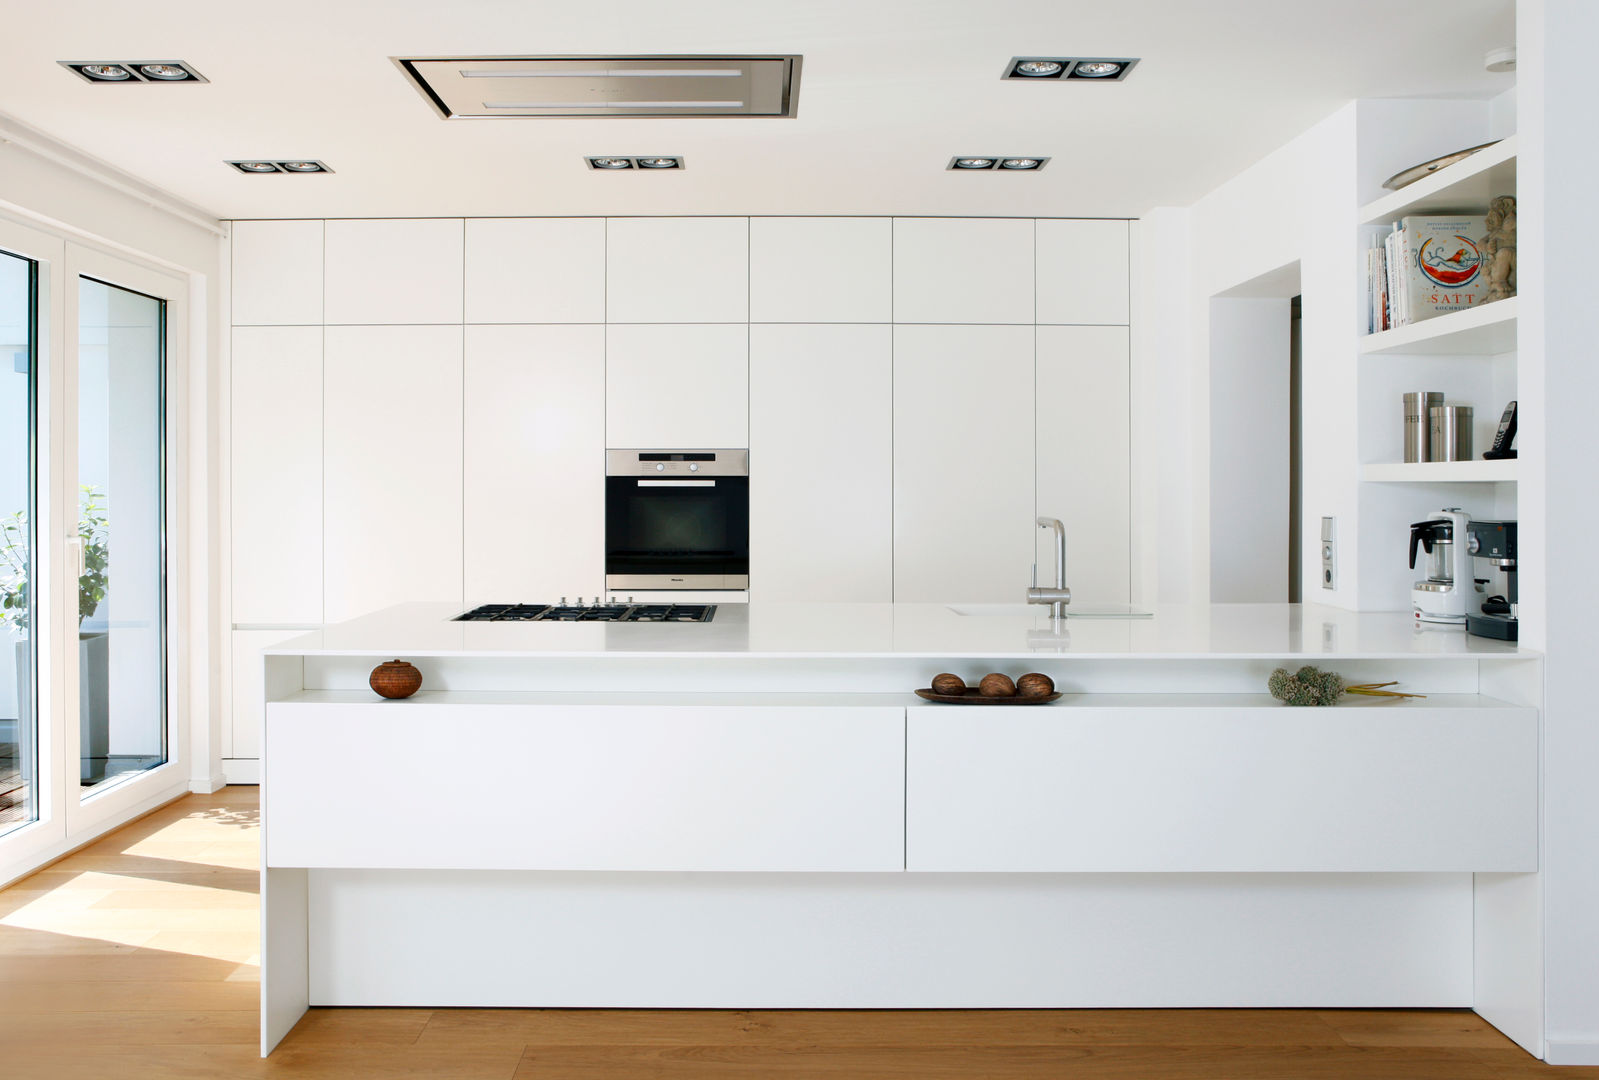 Küche R., rother küchenkonzepte + möbeldesign Gmbh rother küchenkonzepte + möbeldesign Gmbh Cocinas de estilo moderno